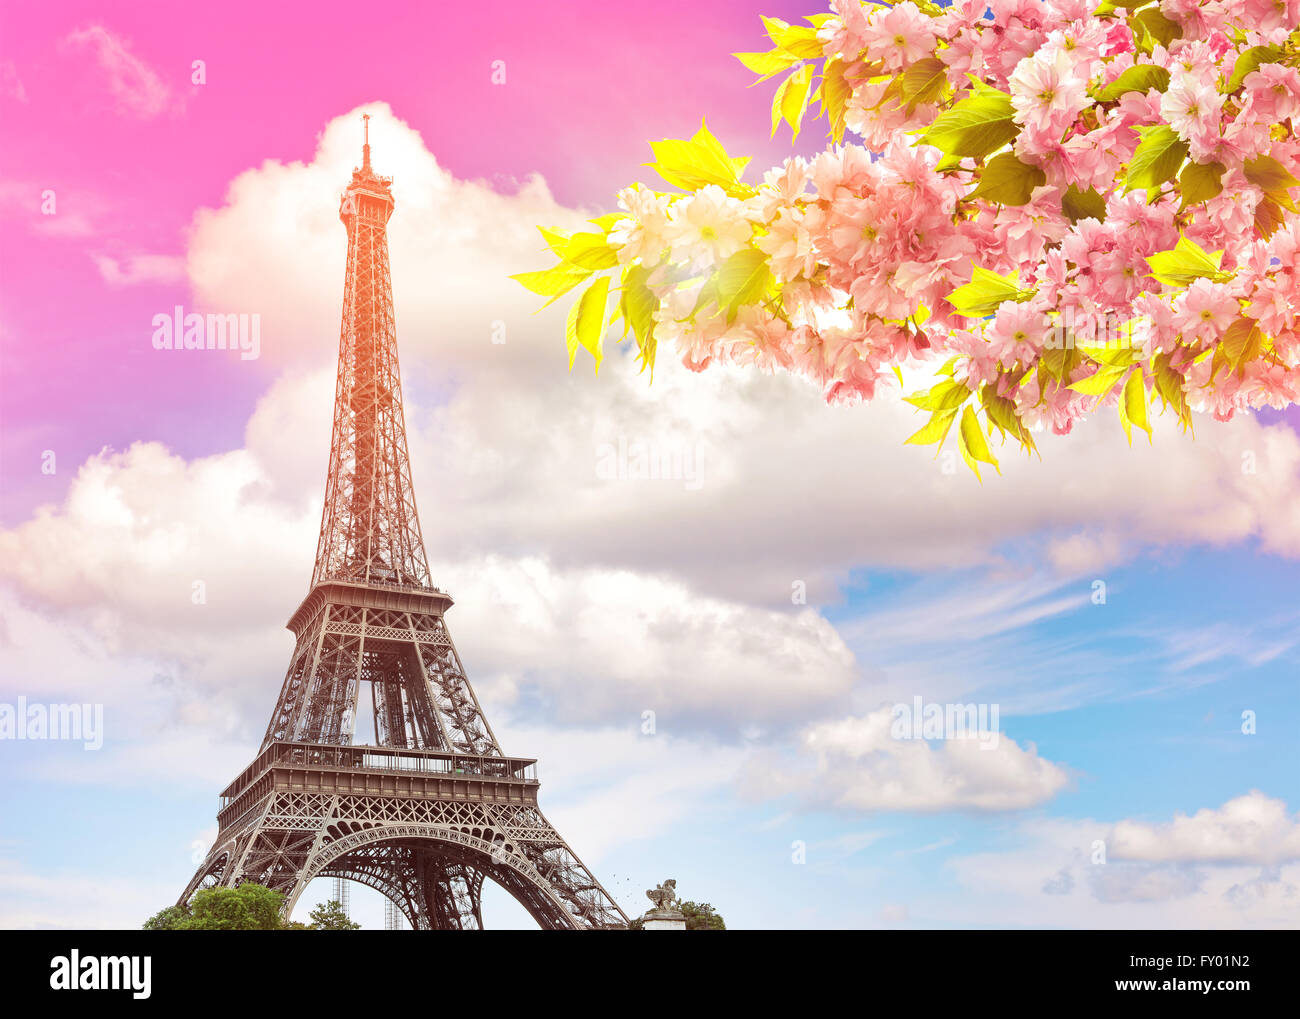 Tour Eiffel Paris contre bleu ciel coloré au coucher du soleil. Printemps en fleurs cerisier. Tons style vintage photo Banque D'Images